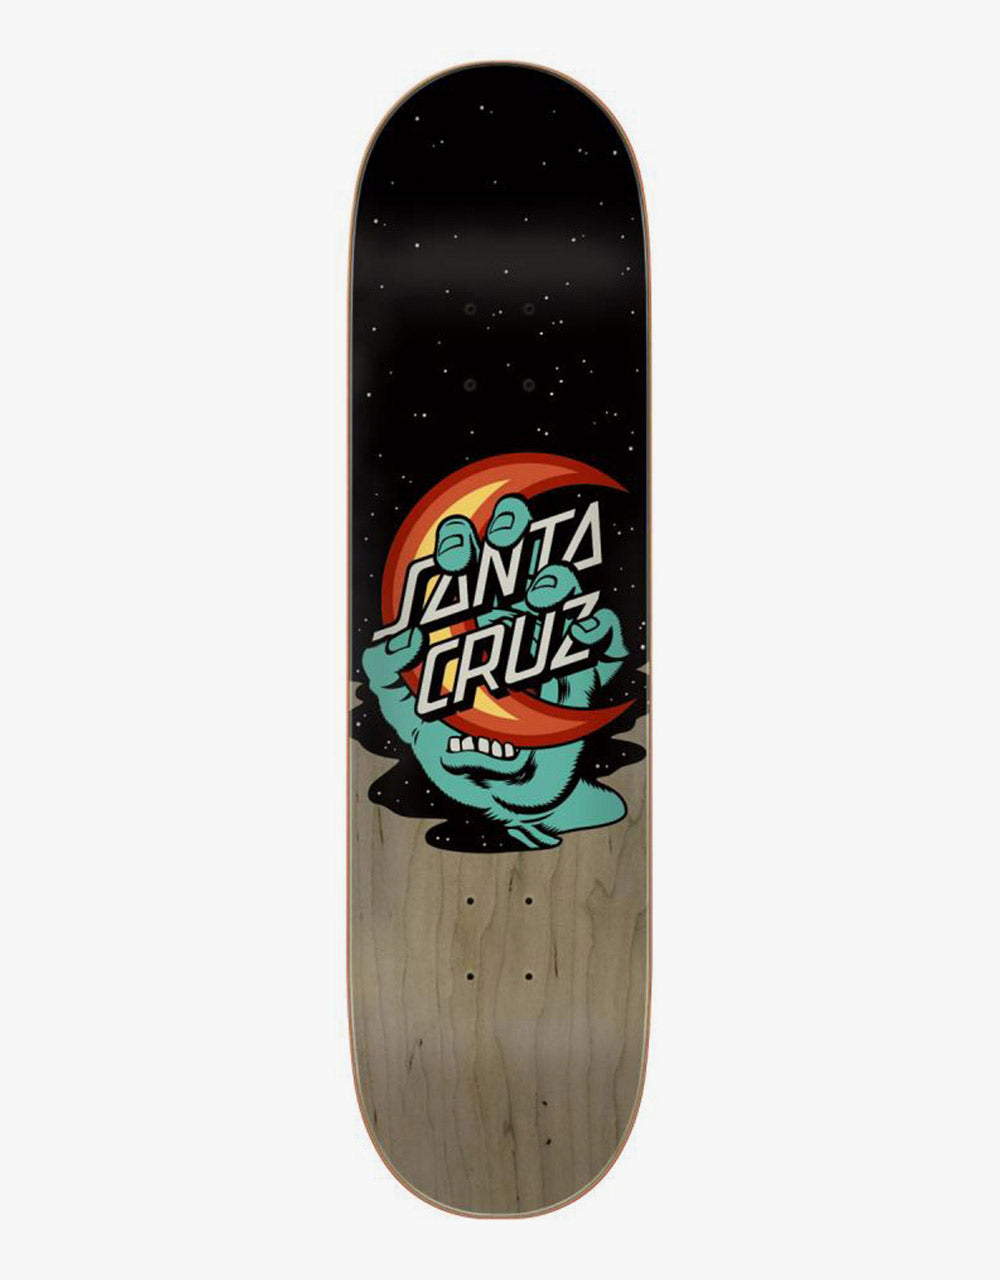 Santa Cruz Screaming Delta Moon Skateboard Deck - 8.25"